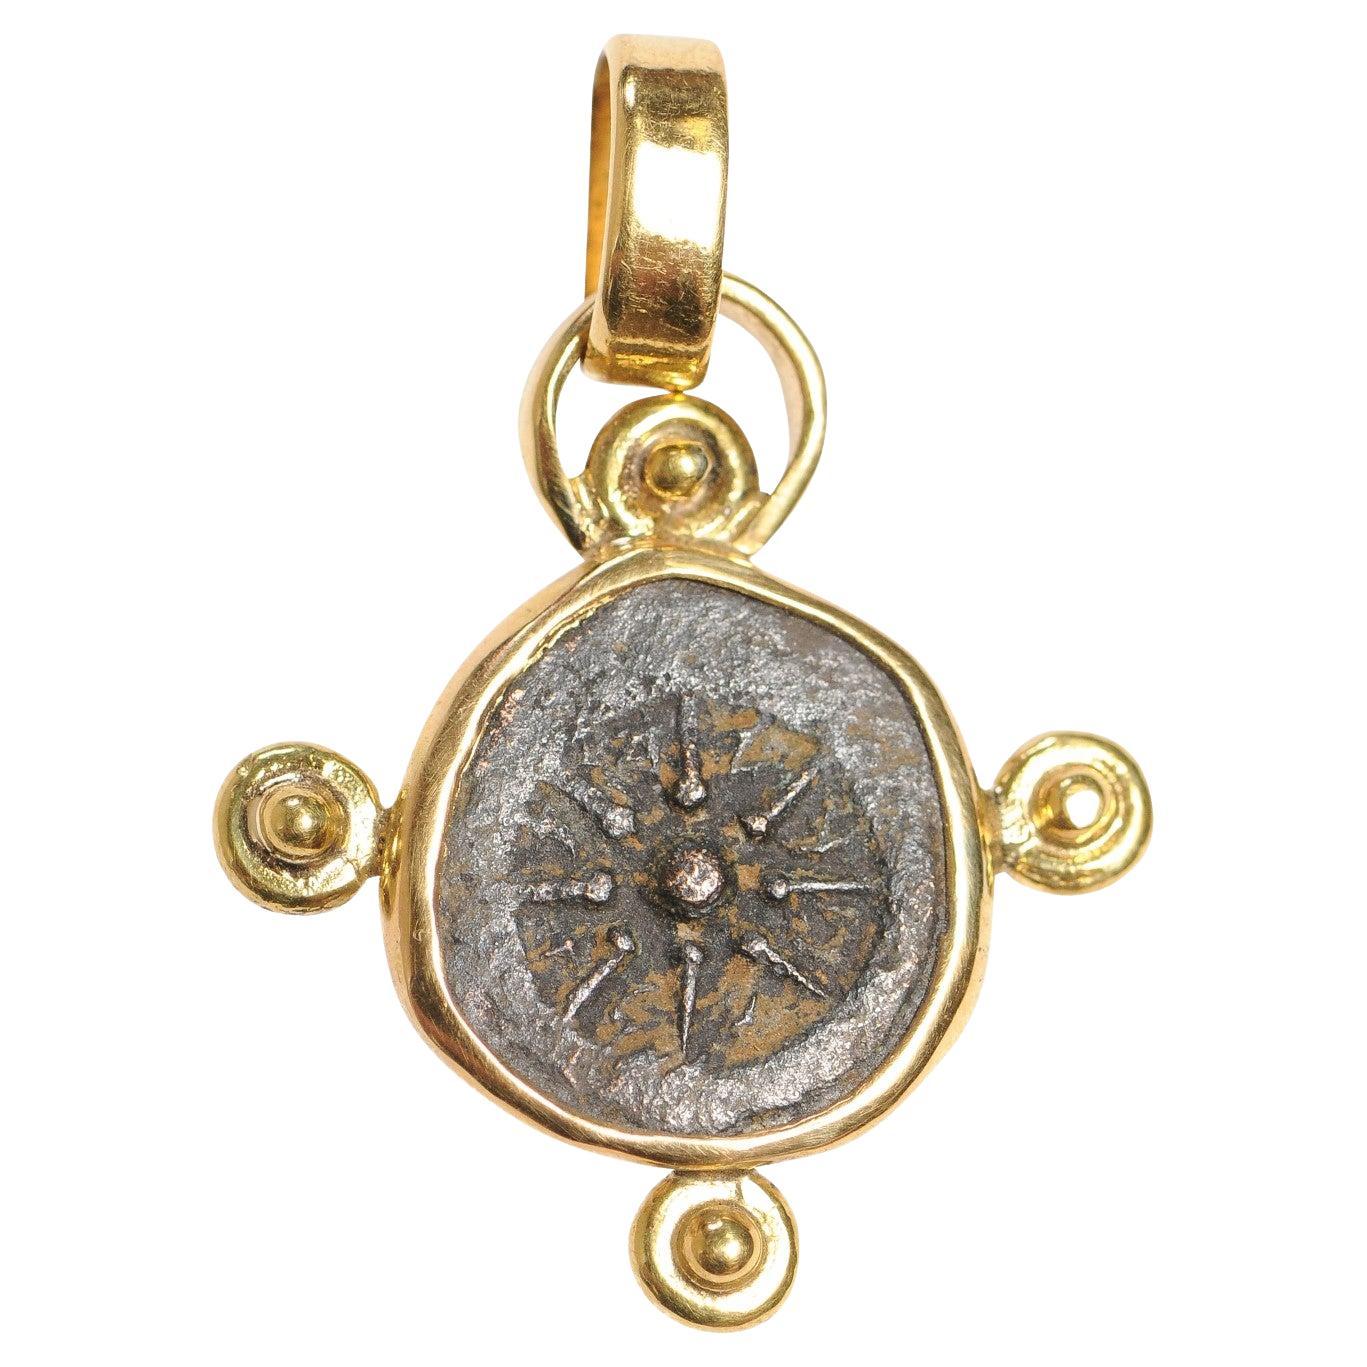 Coin Mite de la veuve romaine, pendentif en or 22 carats (pendant uniquement)